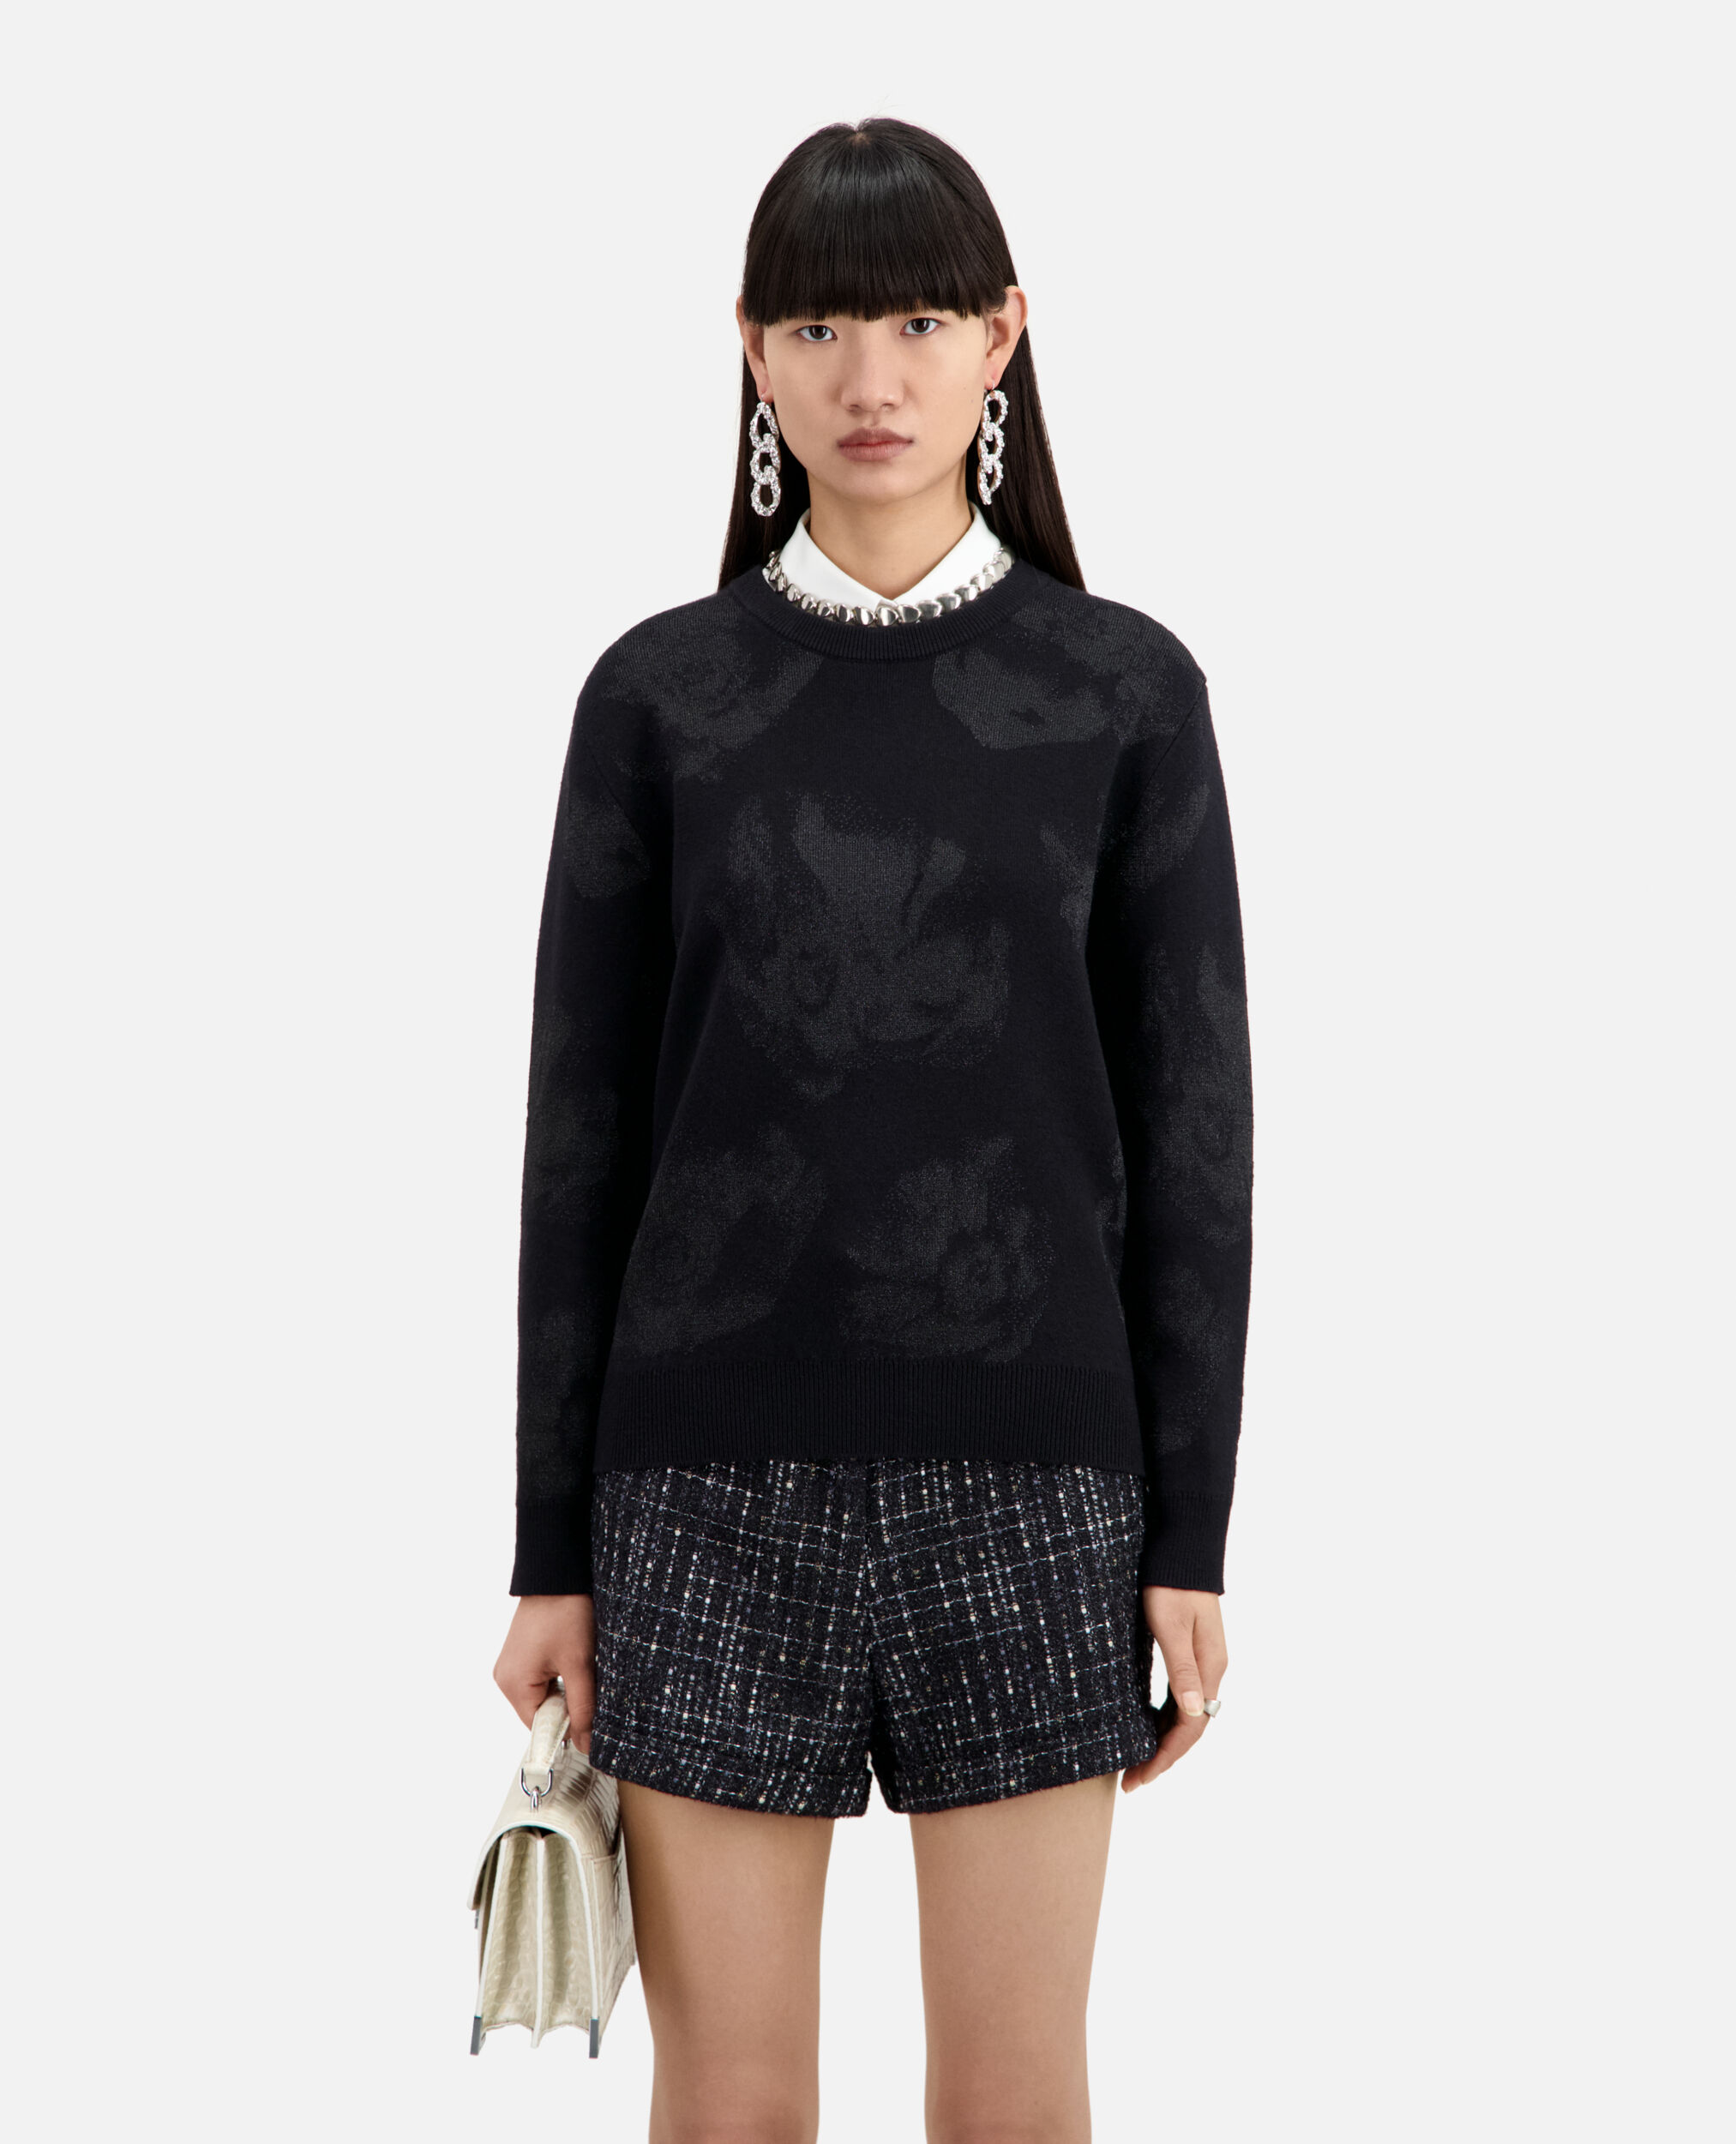 Black wool-blend jumper with silver patterns, BLACK/BLACK, hi-res image number null